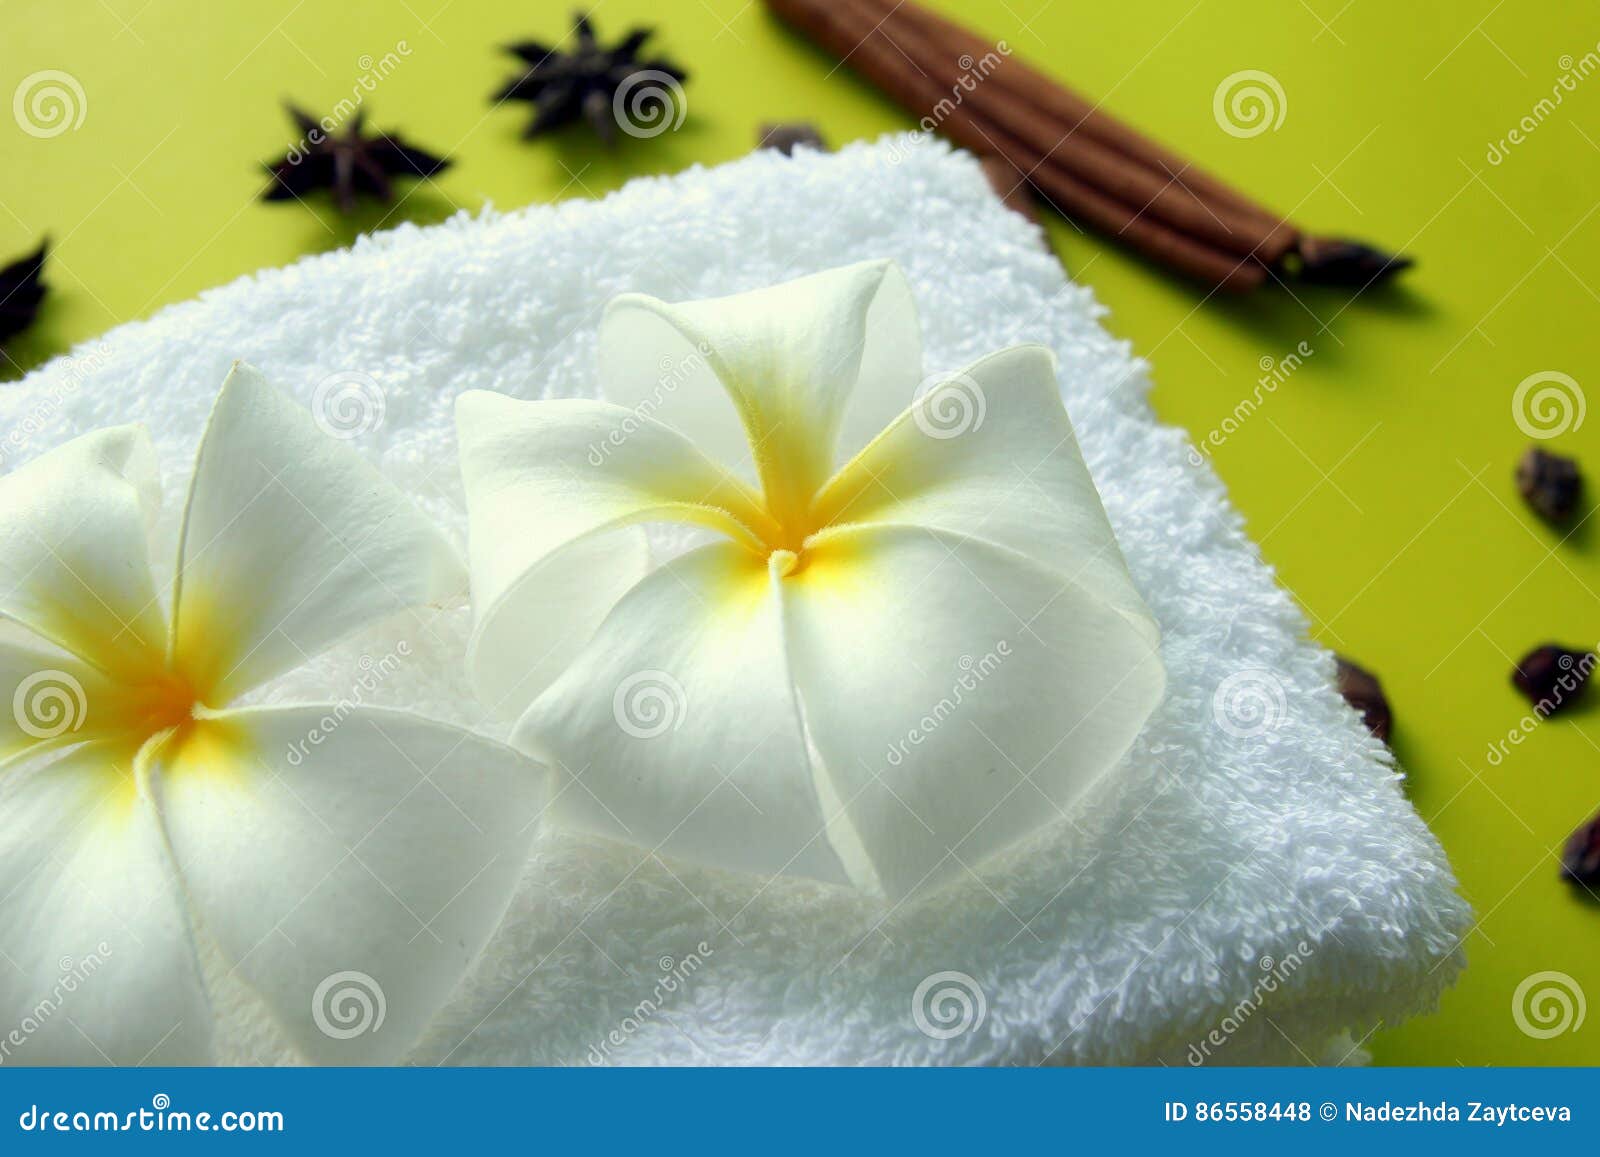 Белое полотенце с цветками Plumeria с звездами ручек анисовки и ...